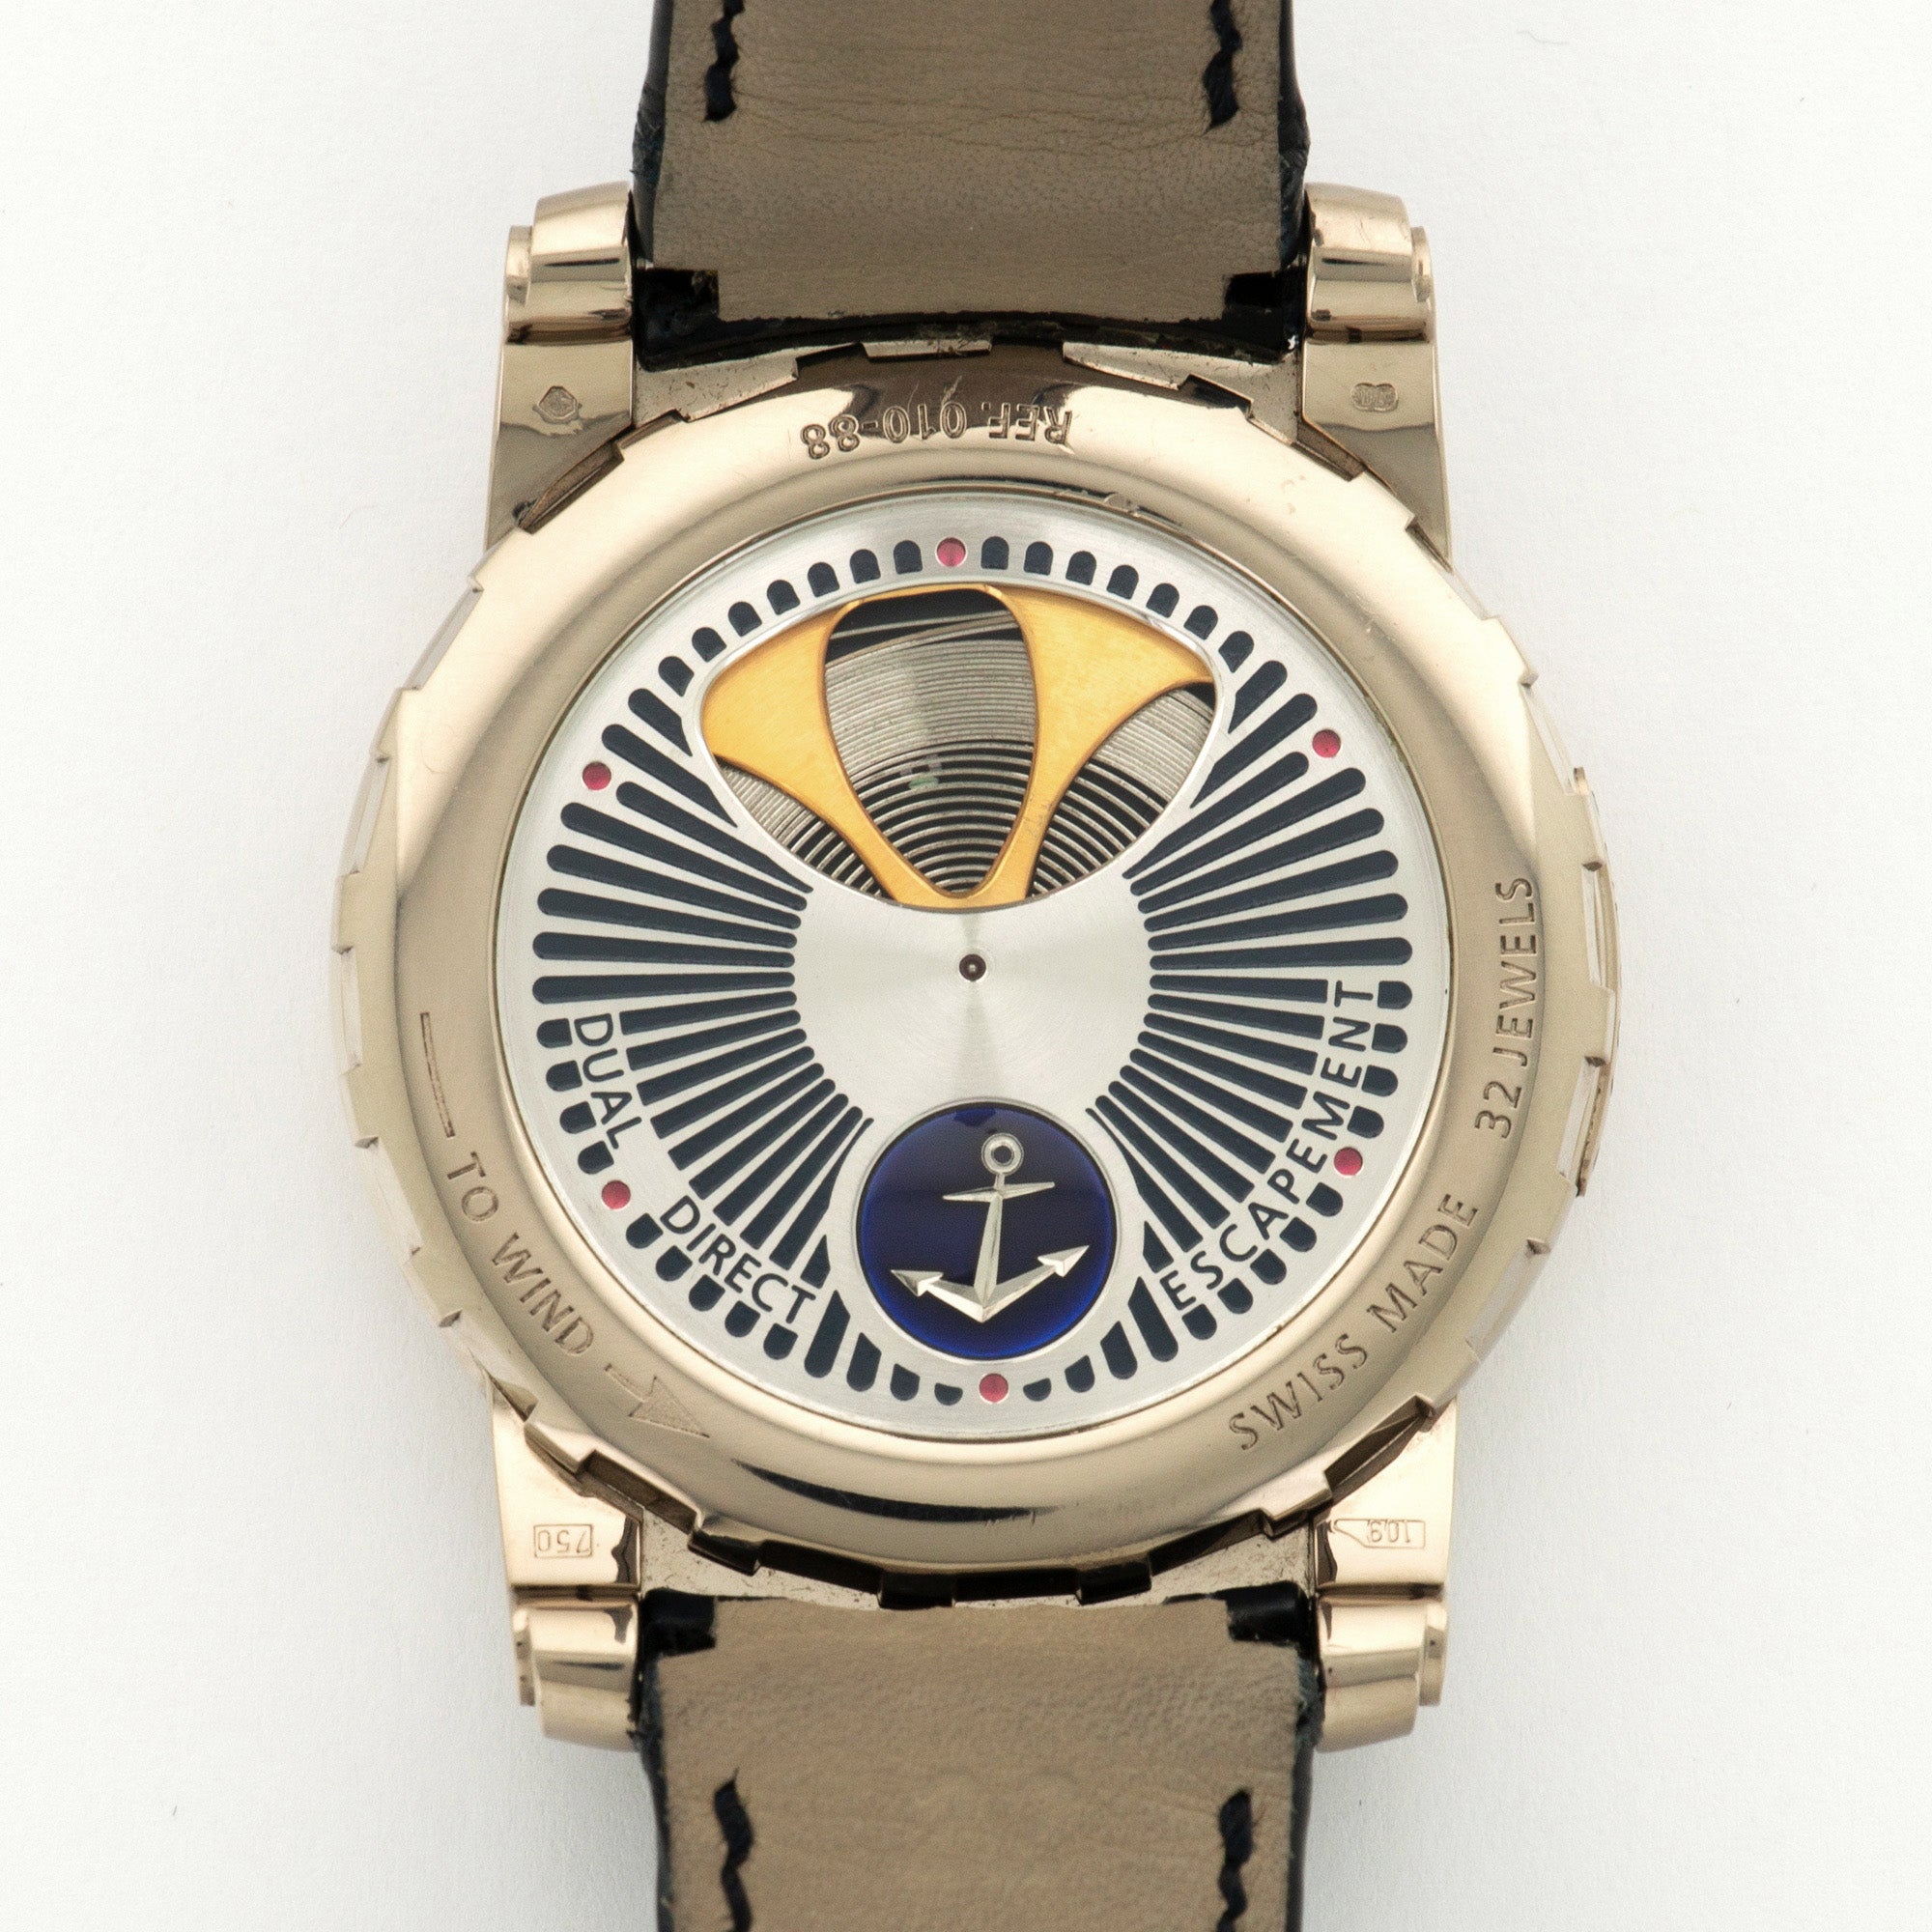 Ulysse Nardin - Ulysse Nardin White Gold Freak Skeleton Watch Ref. 010-88 - The Keystone Watches